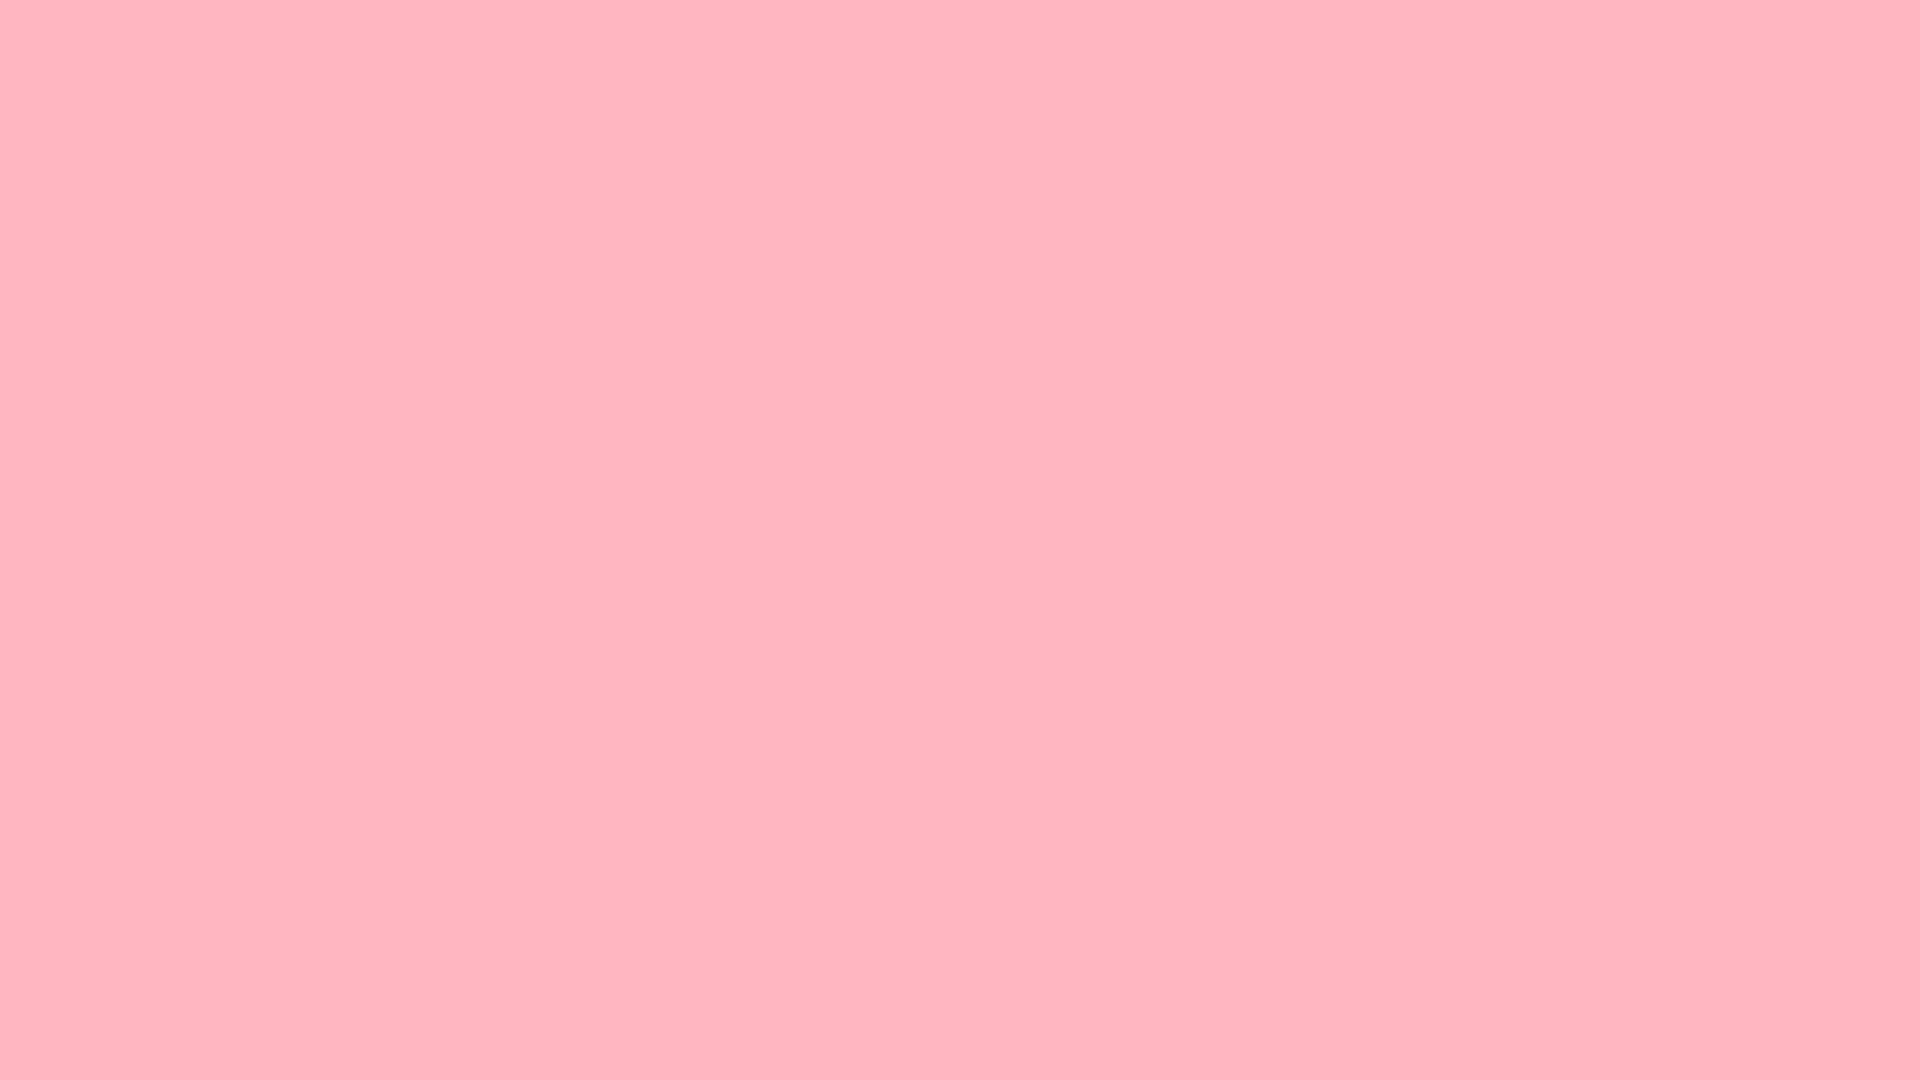 Nền màu hồng nhạt: Màu hồng nhạt là một trong những màu nổi bật và tươi sáng nhất. Bạn cảm thấy như muốn sử dụng màu này cho tất cả các thiết kế của mình. Hãy nhấn vào hình ảnh để khám phá bộ sưu tập nền màu hồng nhạt đầy ấn tượng này.